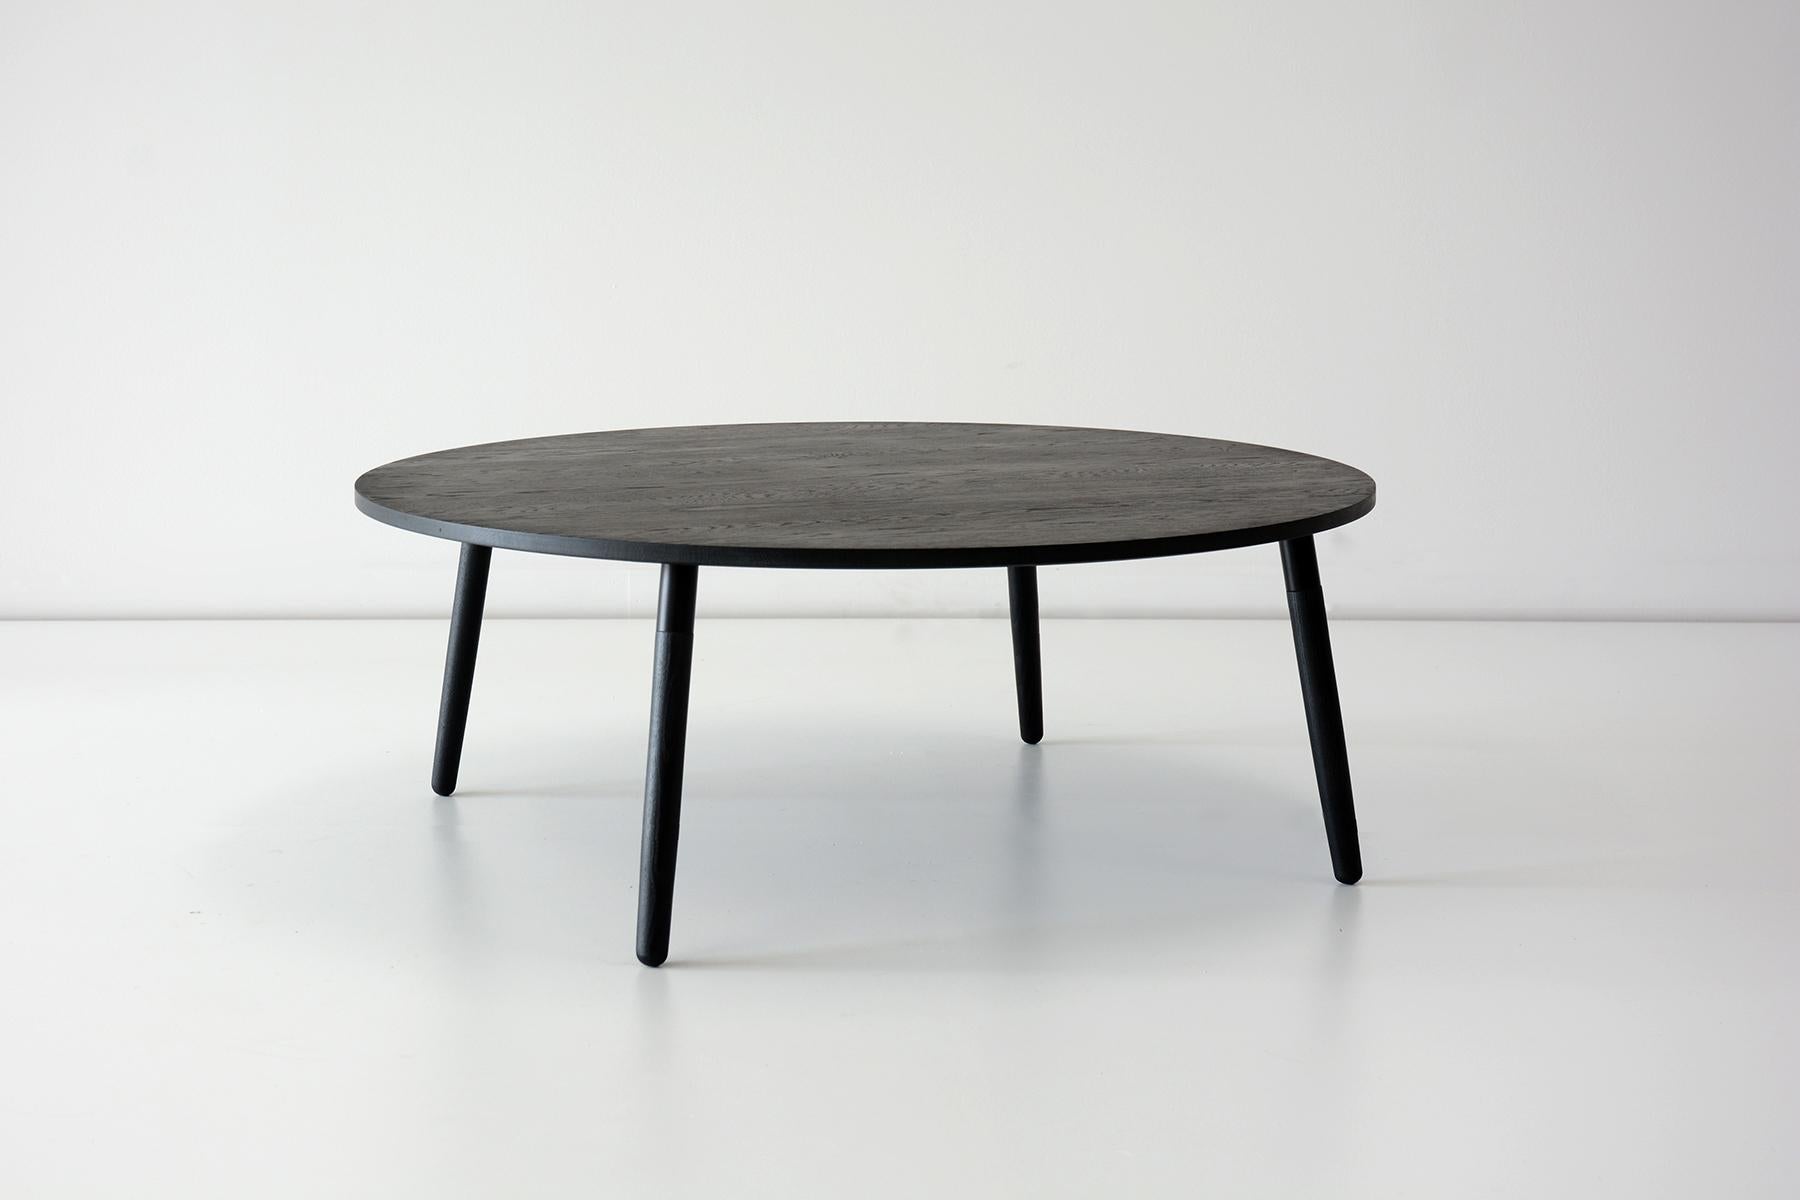 Petite table basse en chêne Crescenttown par Hollis & Morris
Dimensions : Diamètre 36